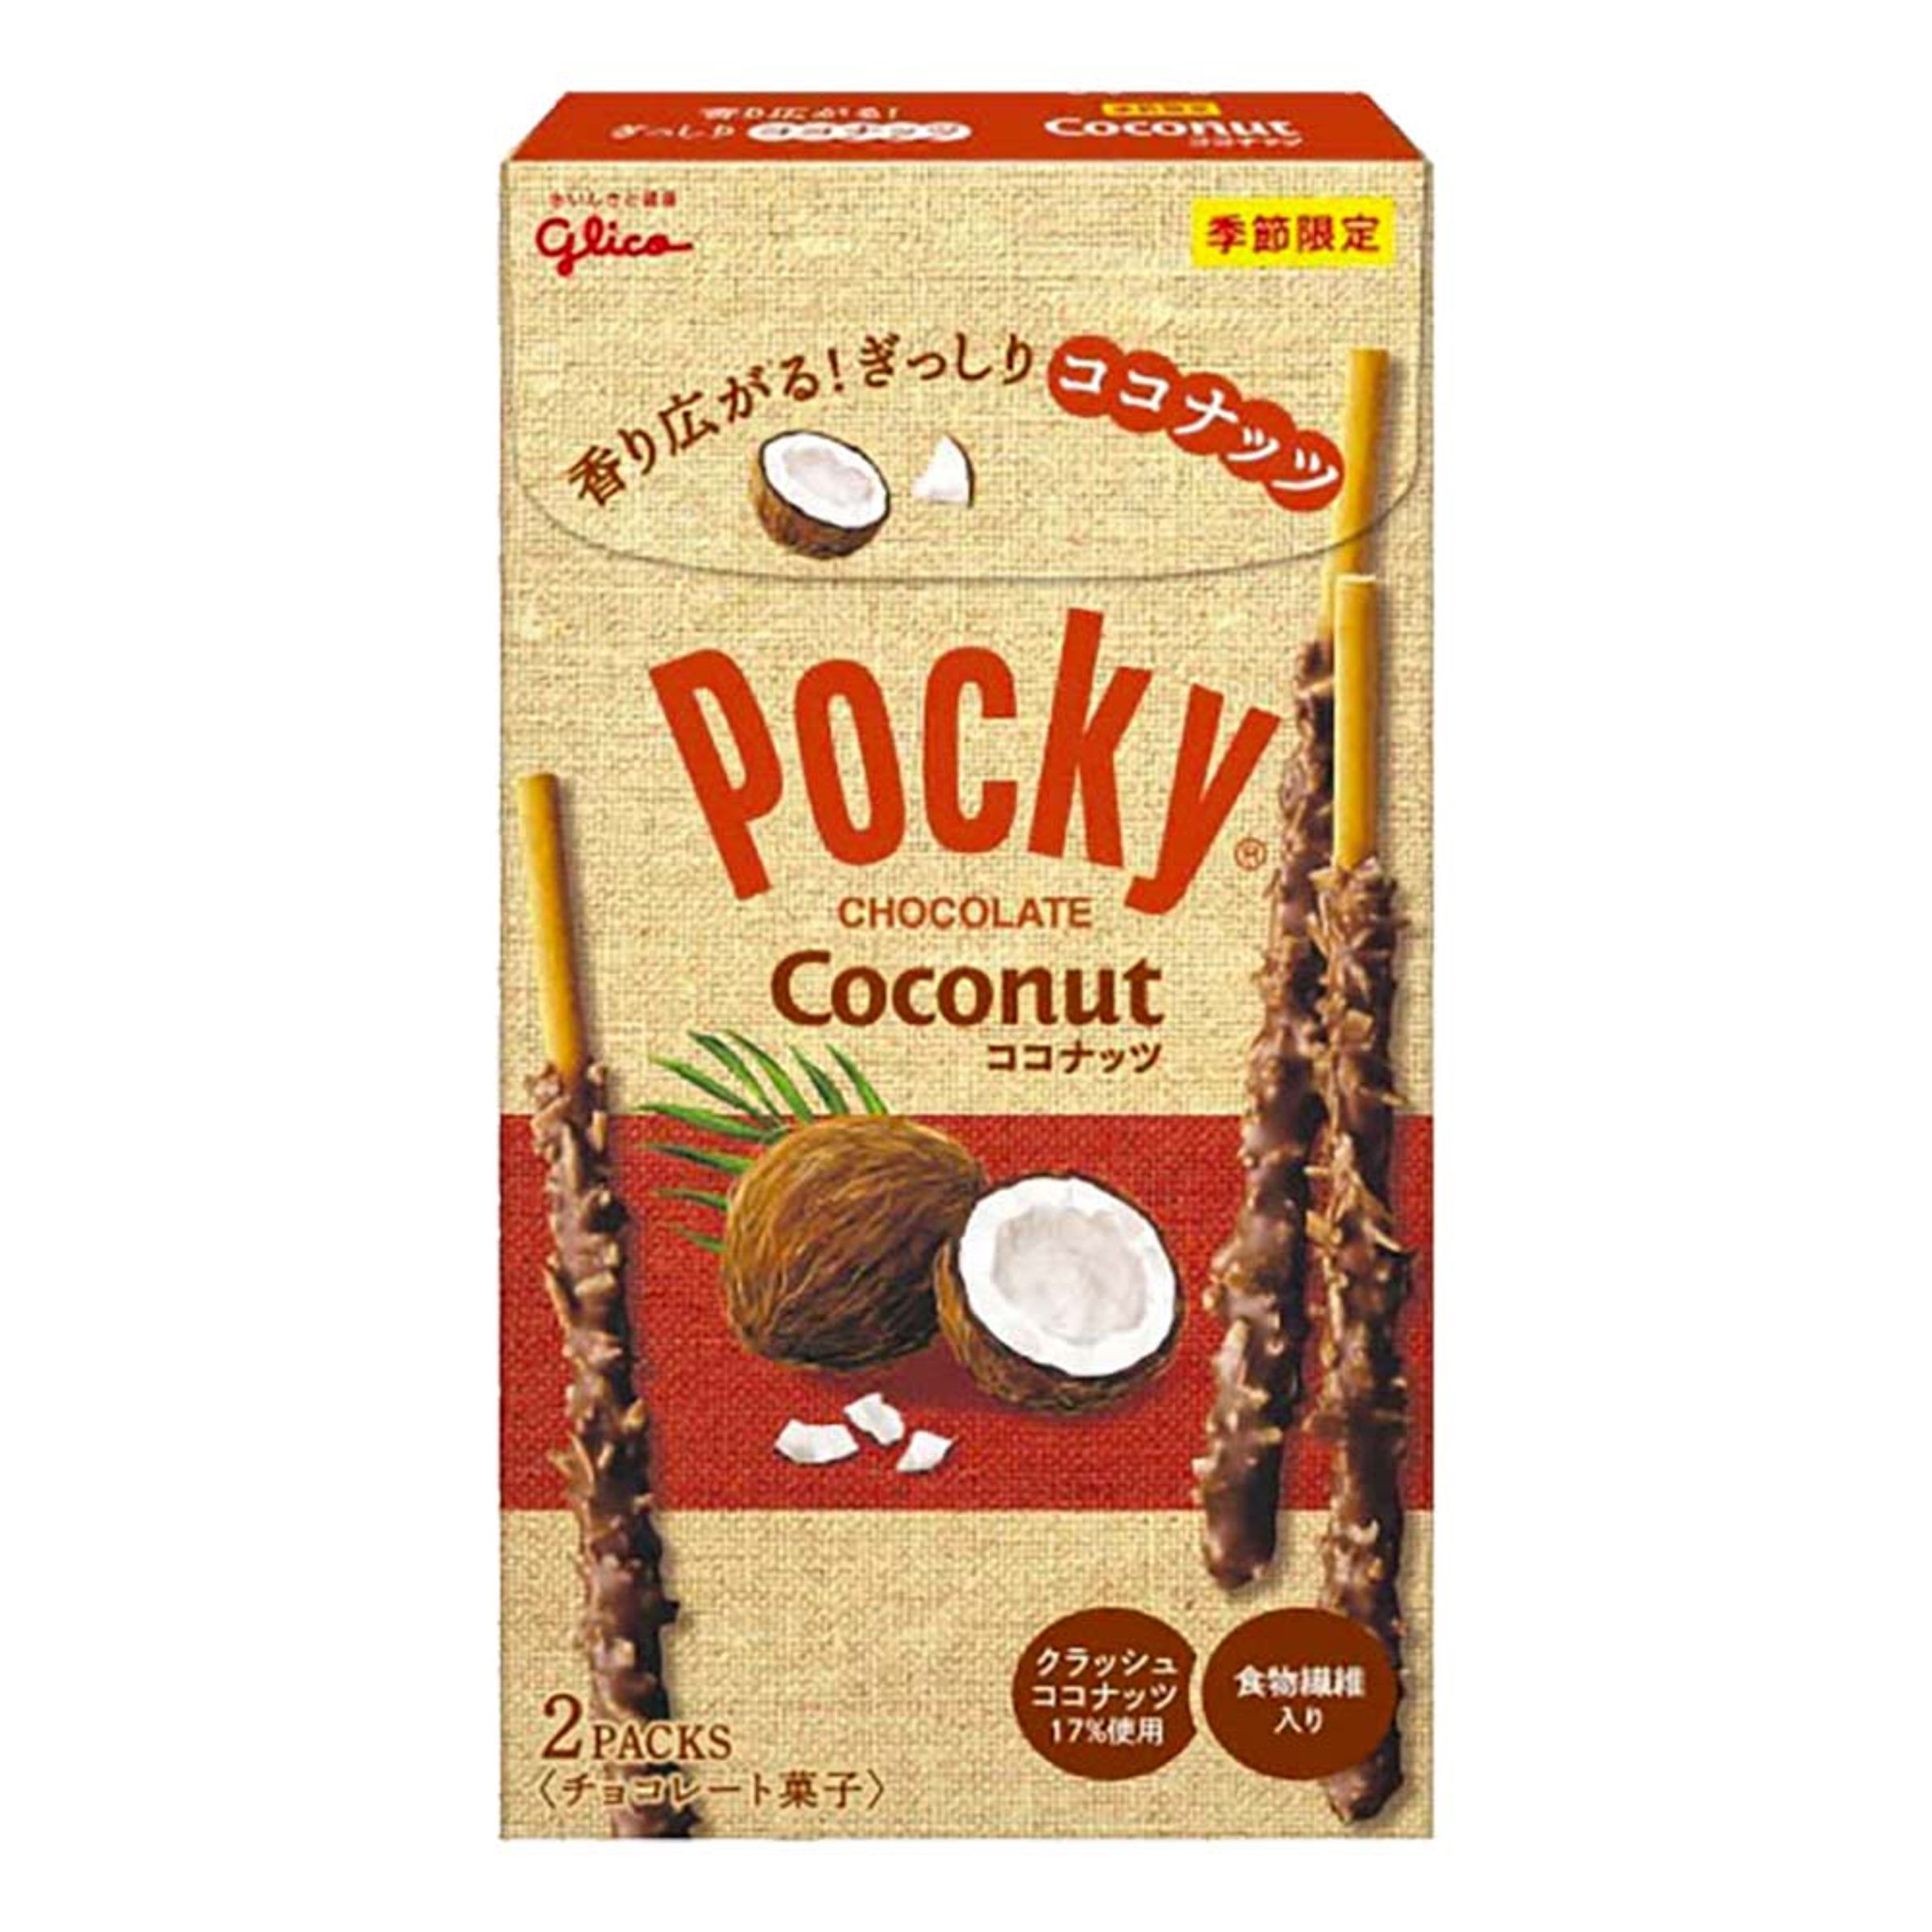 Pocky Chocolate Coconut - 50 gram